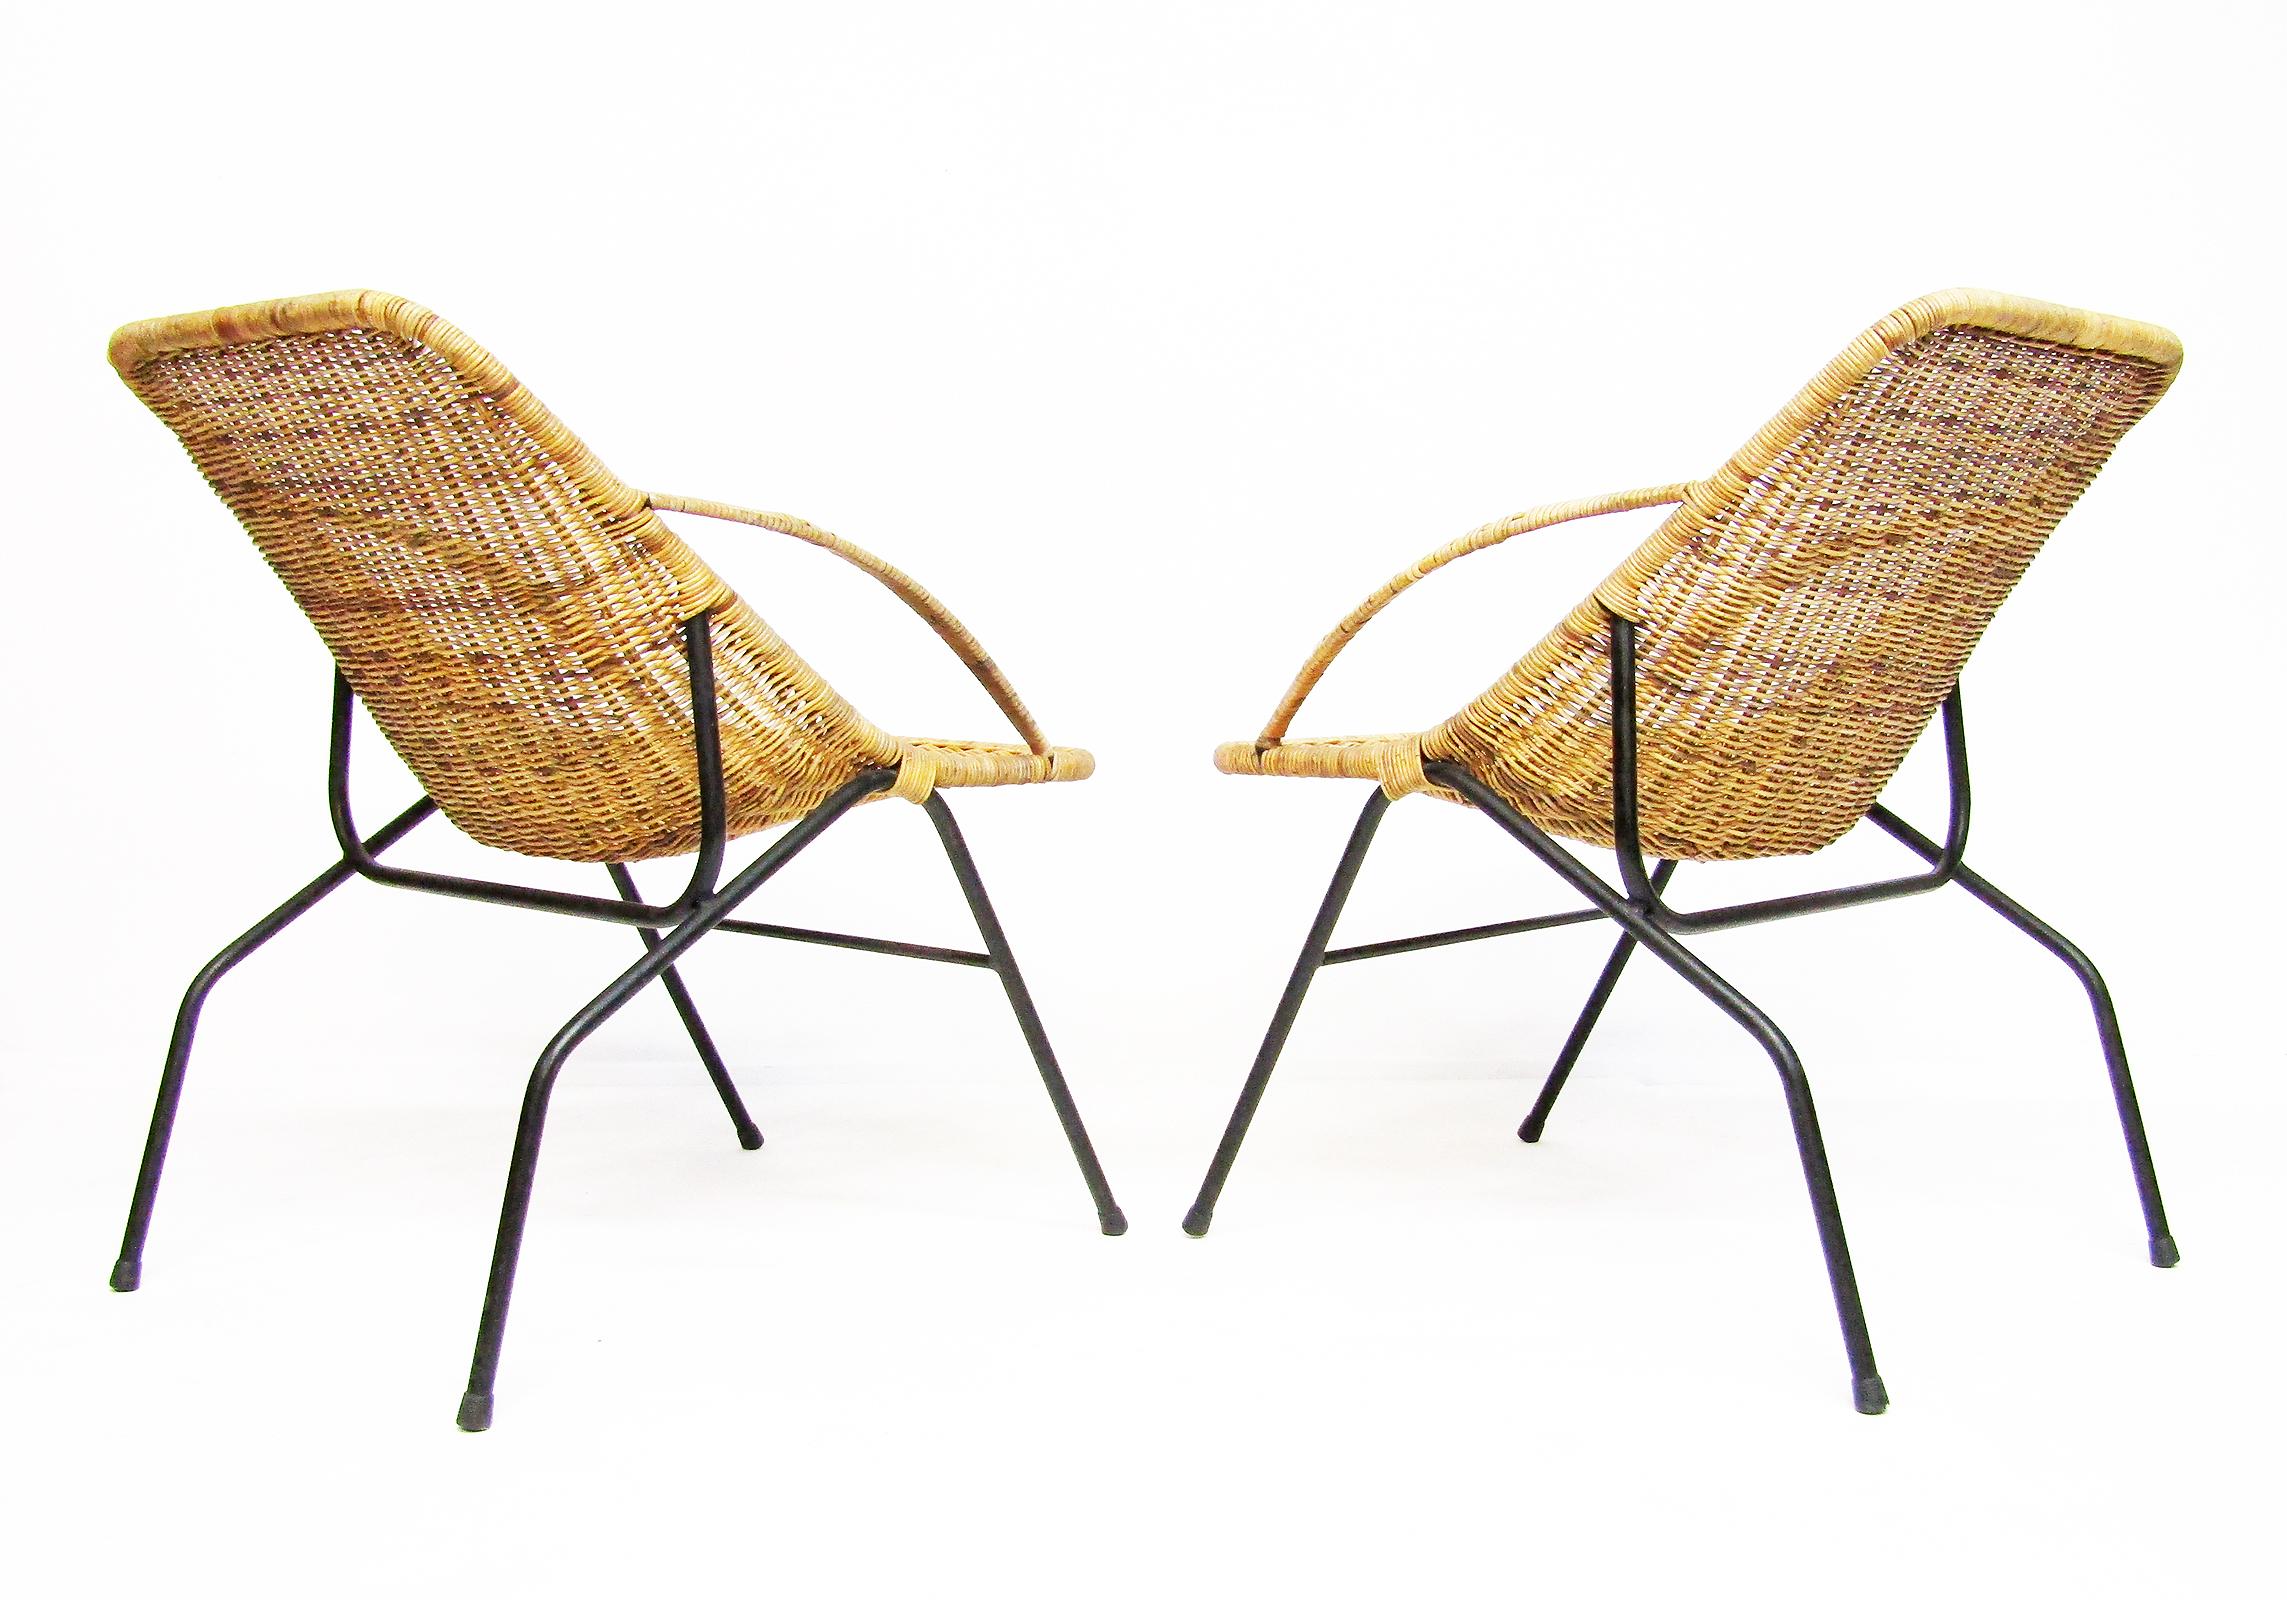 Ein Paar anmutige französische Sessel aus Rattan und Stahlrohr aus den 1950er Jahren im Stil von Jaques Adnet.

Das dynamische, modernistische Gestell erinnert an die Beine einer Gazelle, die Sitze aus Geflecht bieten starken Halt und